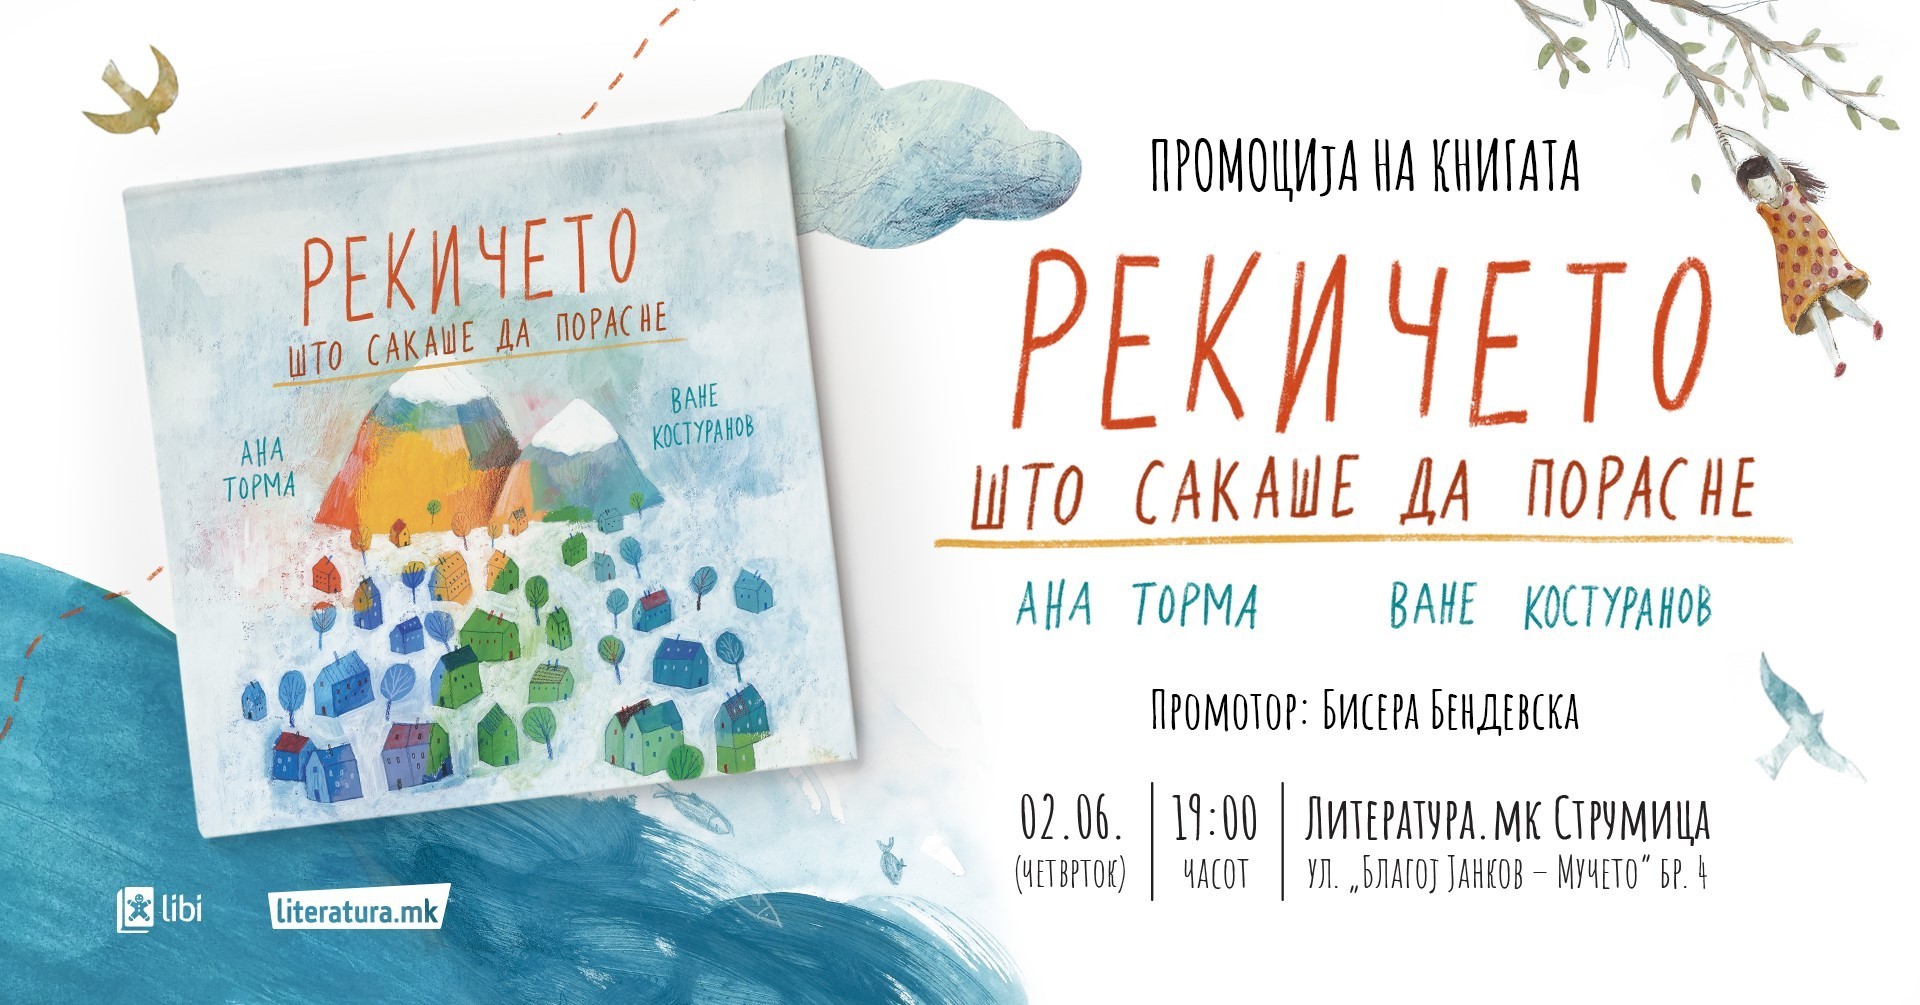 Новата сликовница „Рекичето што сакаше да порасне“ од Ване Костуранов и Ана Торма ќе биде промовирана во „Литература.мк“ во Струмица